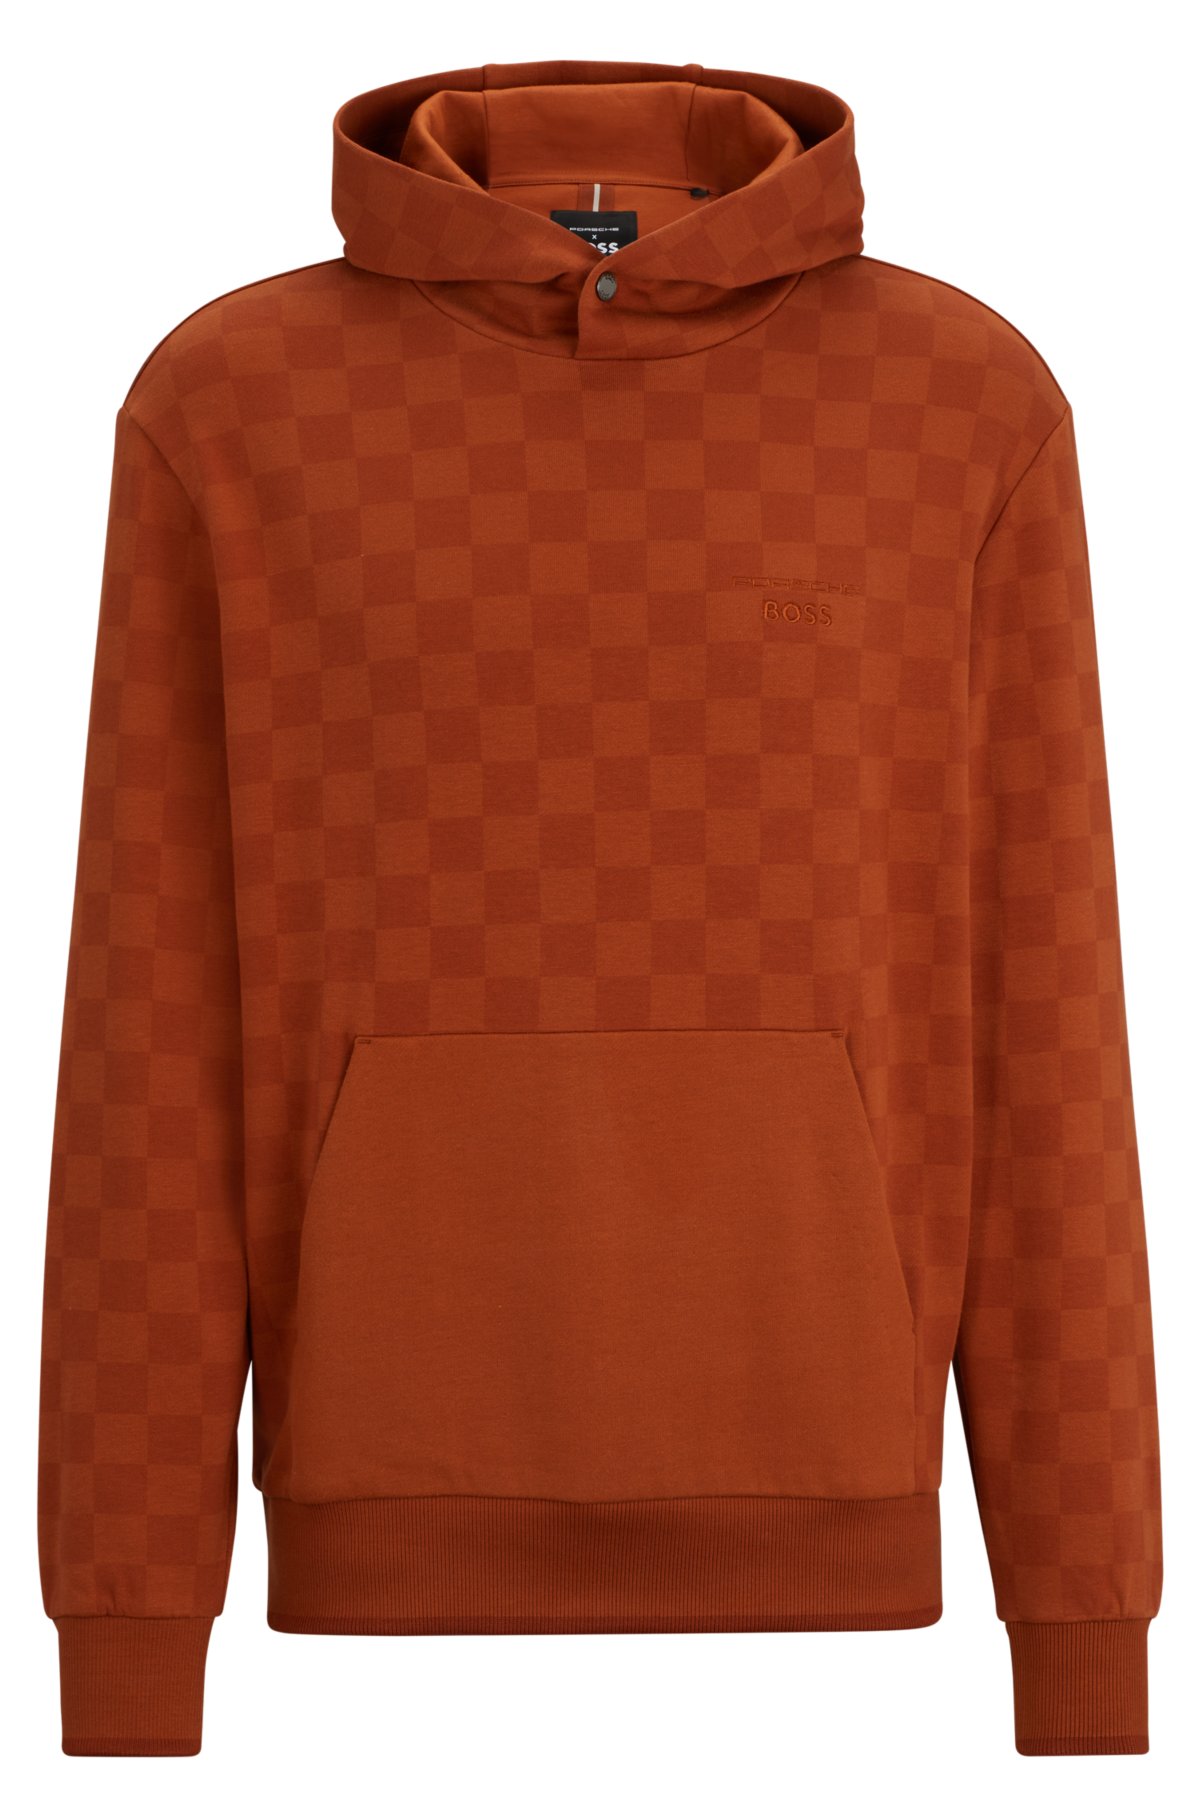 Porsche x BOSS stretch-cotton hoodie with check print, Dark Orange